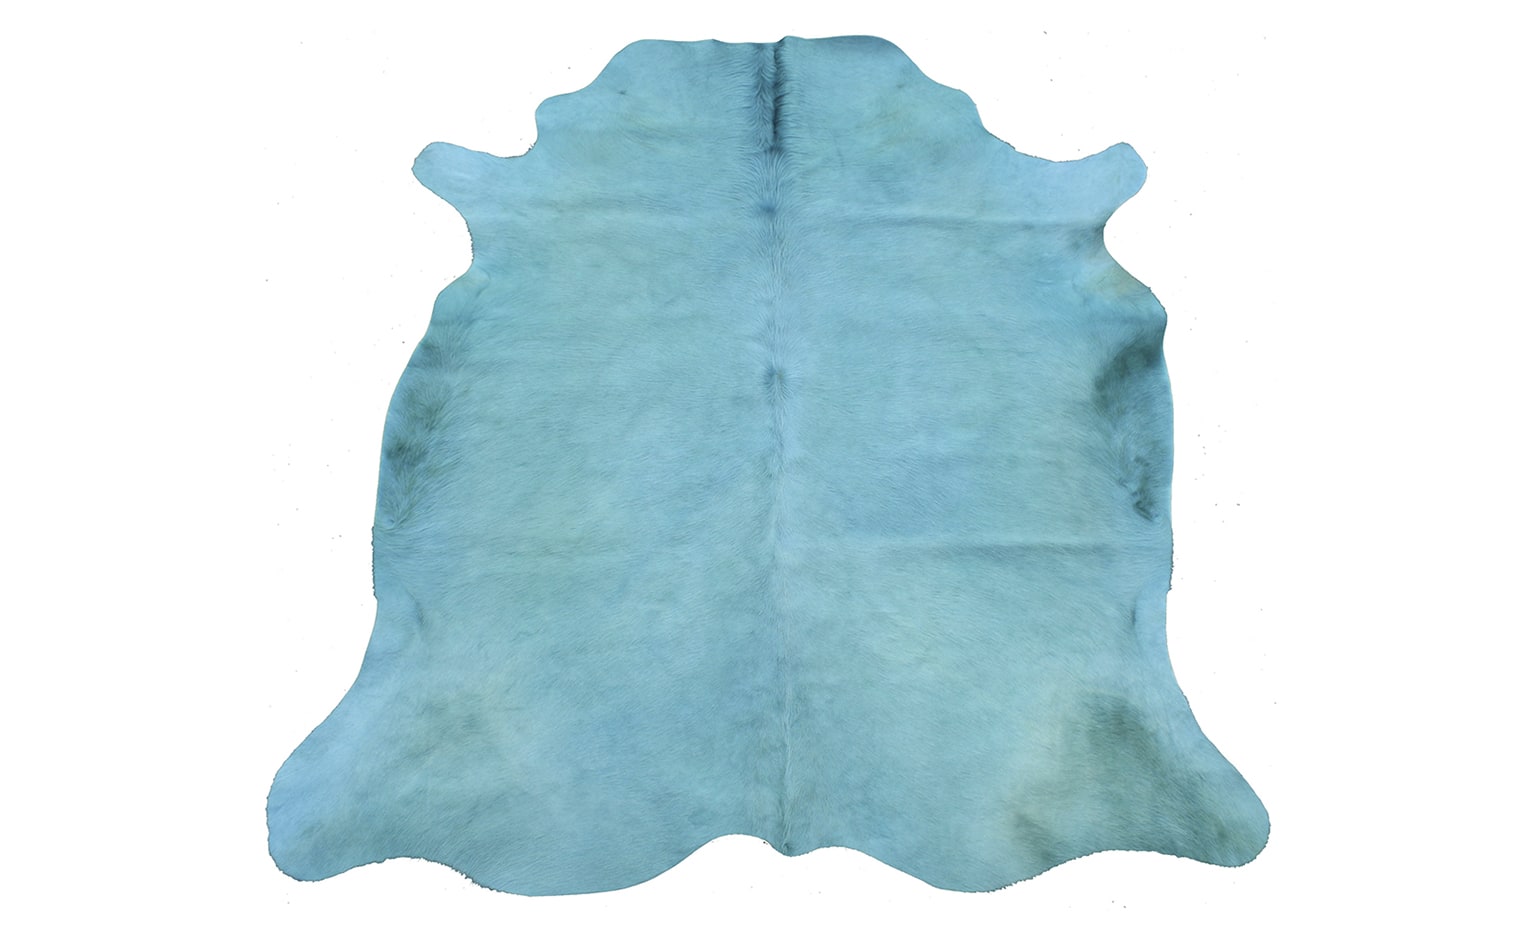 Tapis VACHE TEINTEE Tergus, peau de bête  turquoise, dim 1.90 x 2.10 m